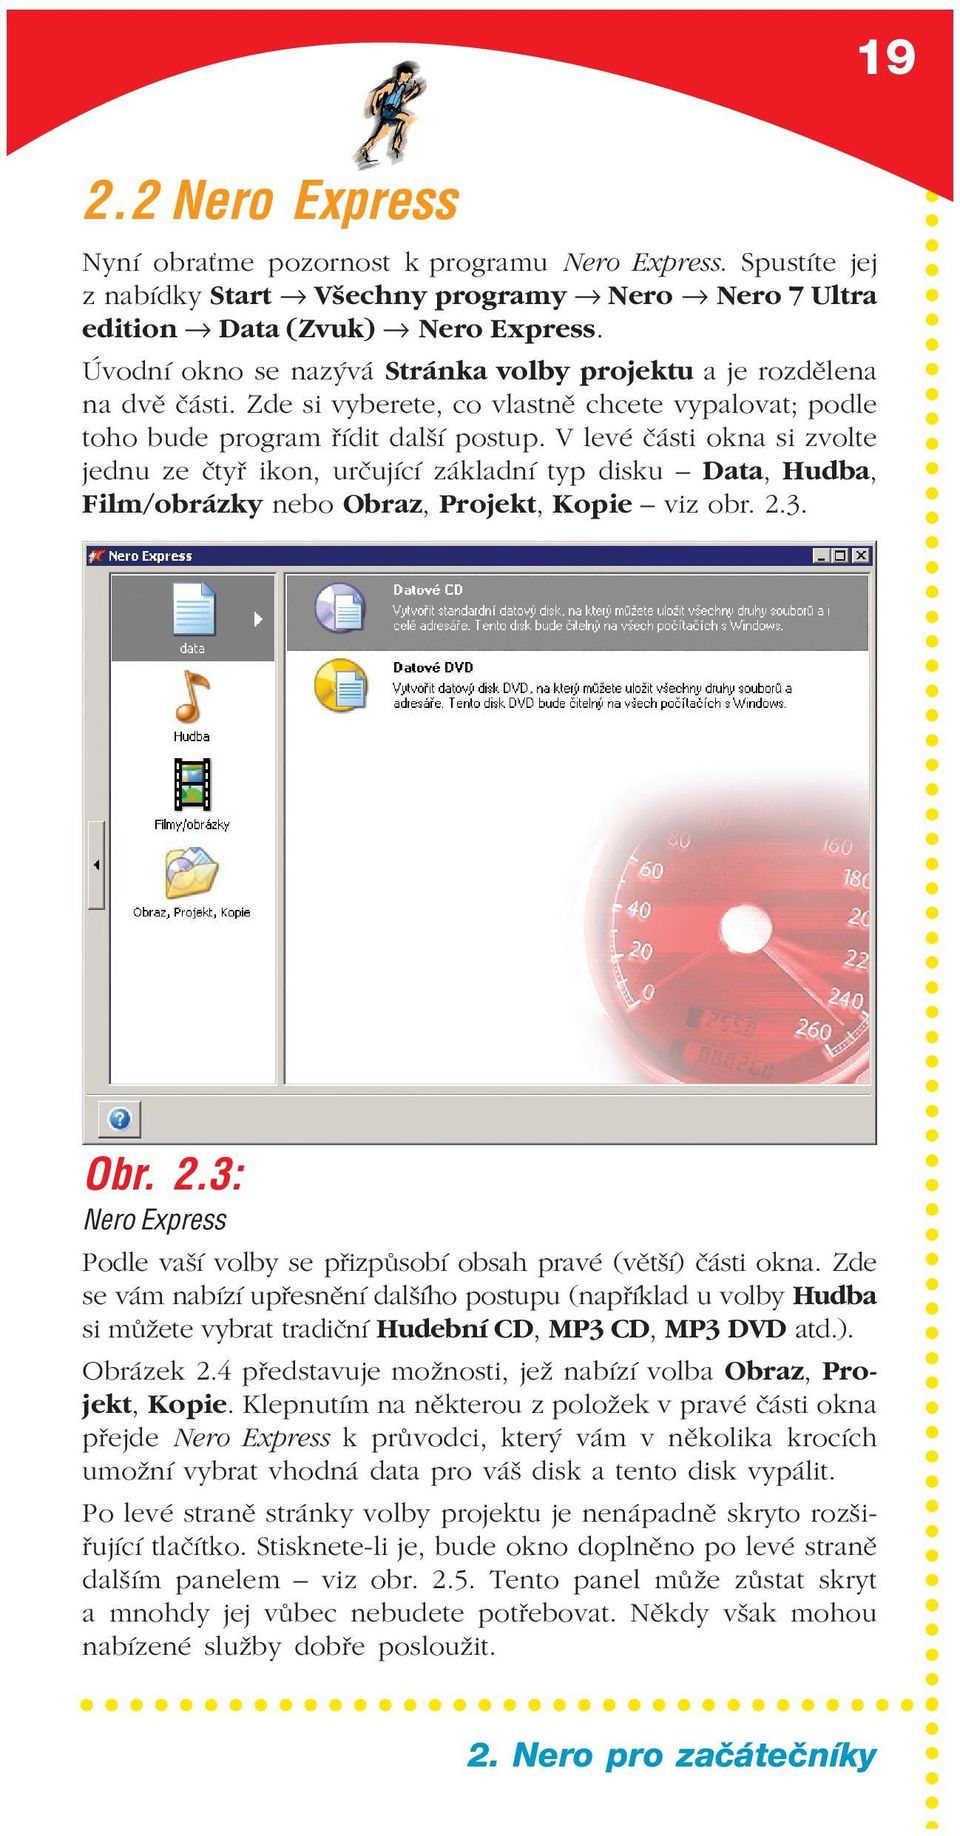 V levé části okna si zvolte jednu ze čtyř ikon, určující základní typ disku Data, Hudba, Film/obrázky nebo Obraz, Projekt, Kopie viz obr. 2.